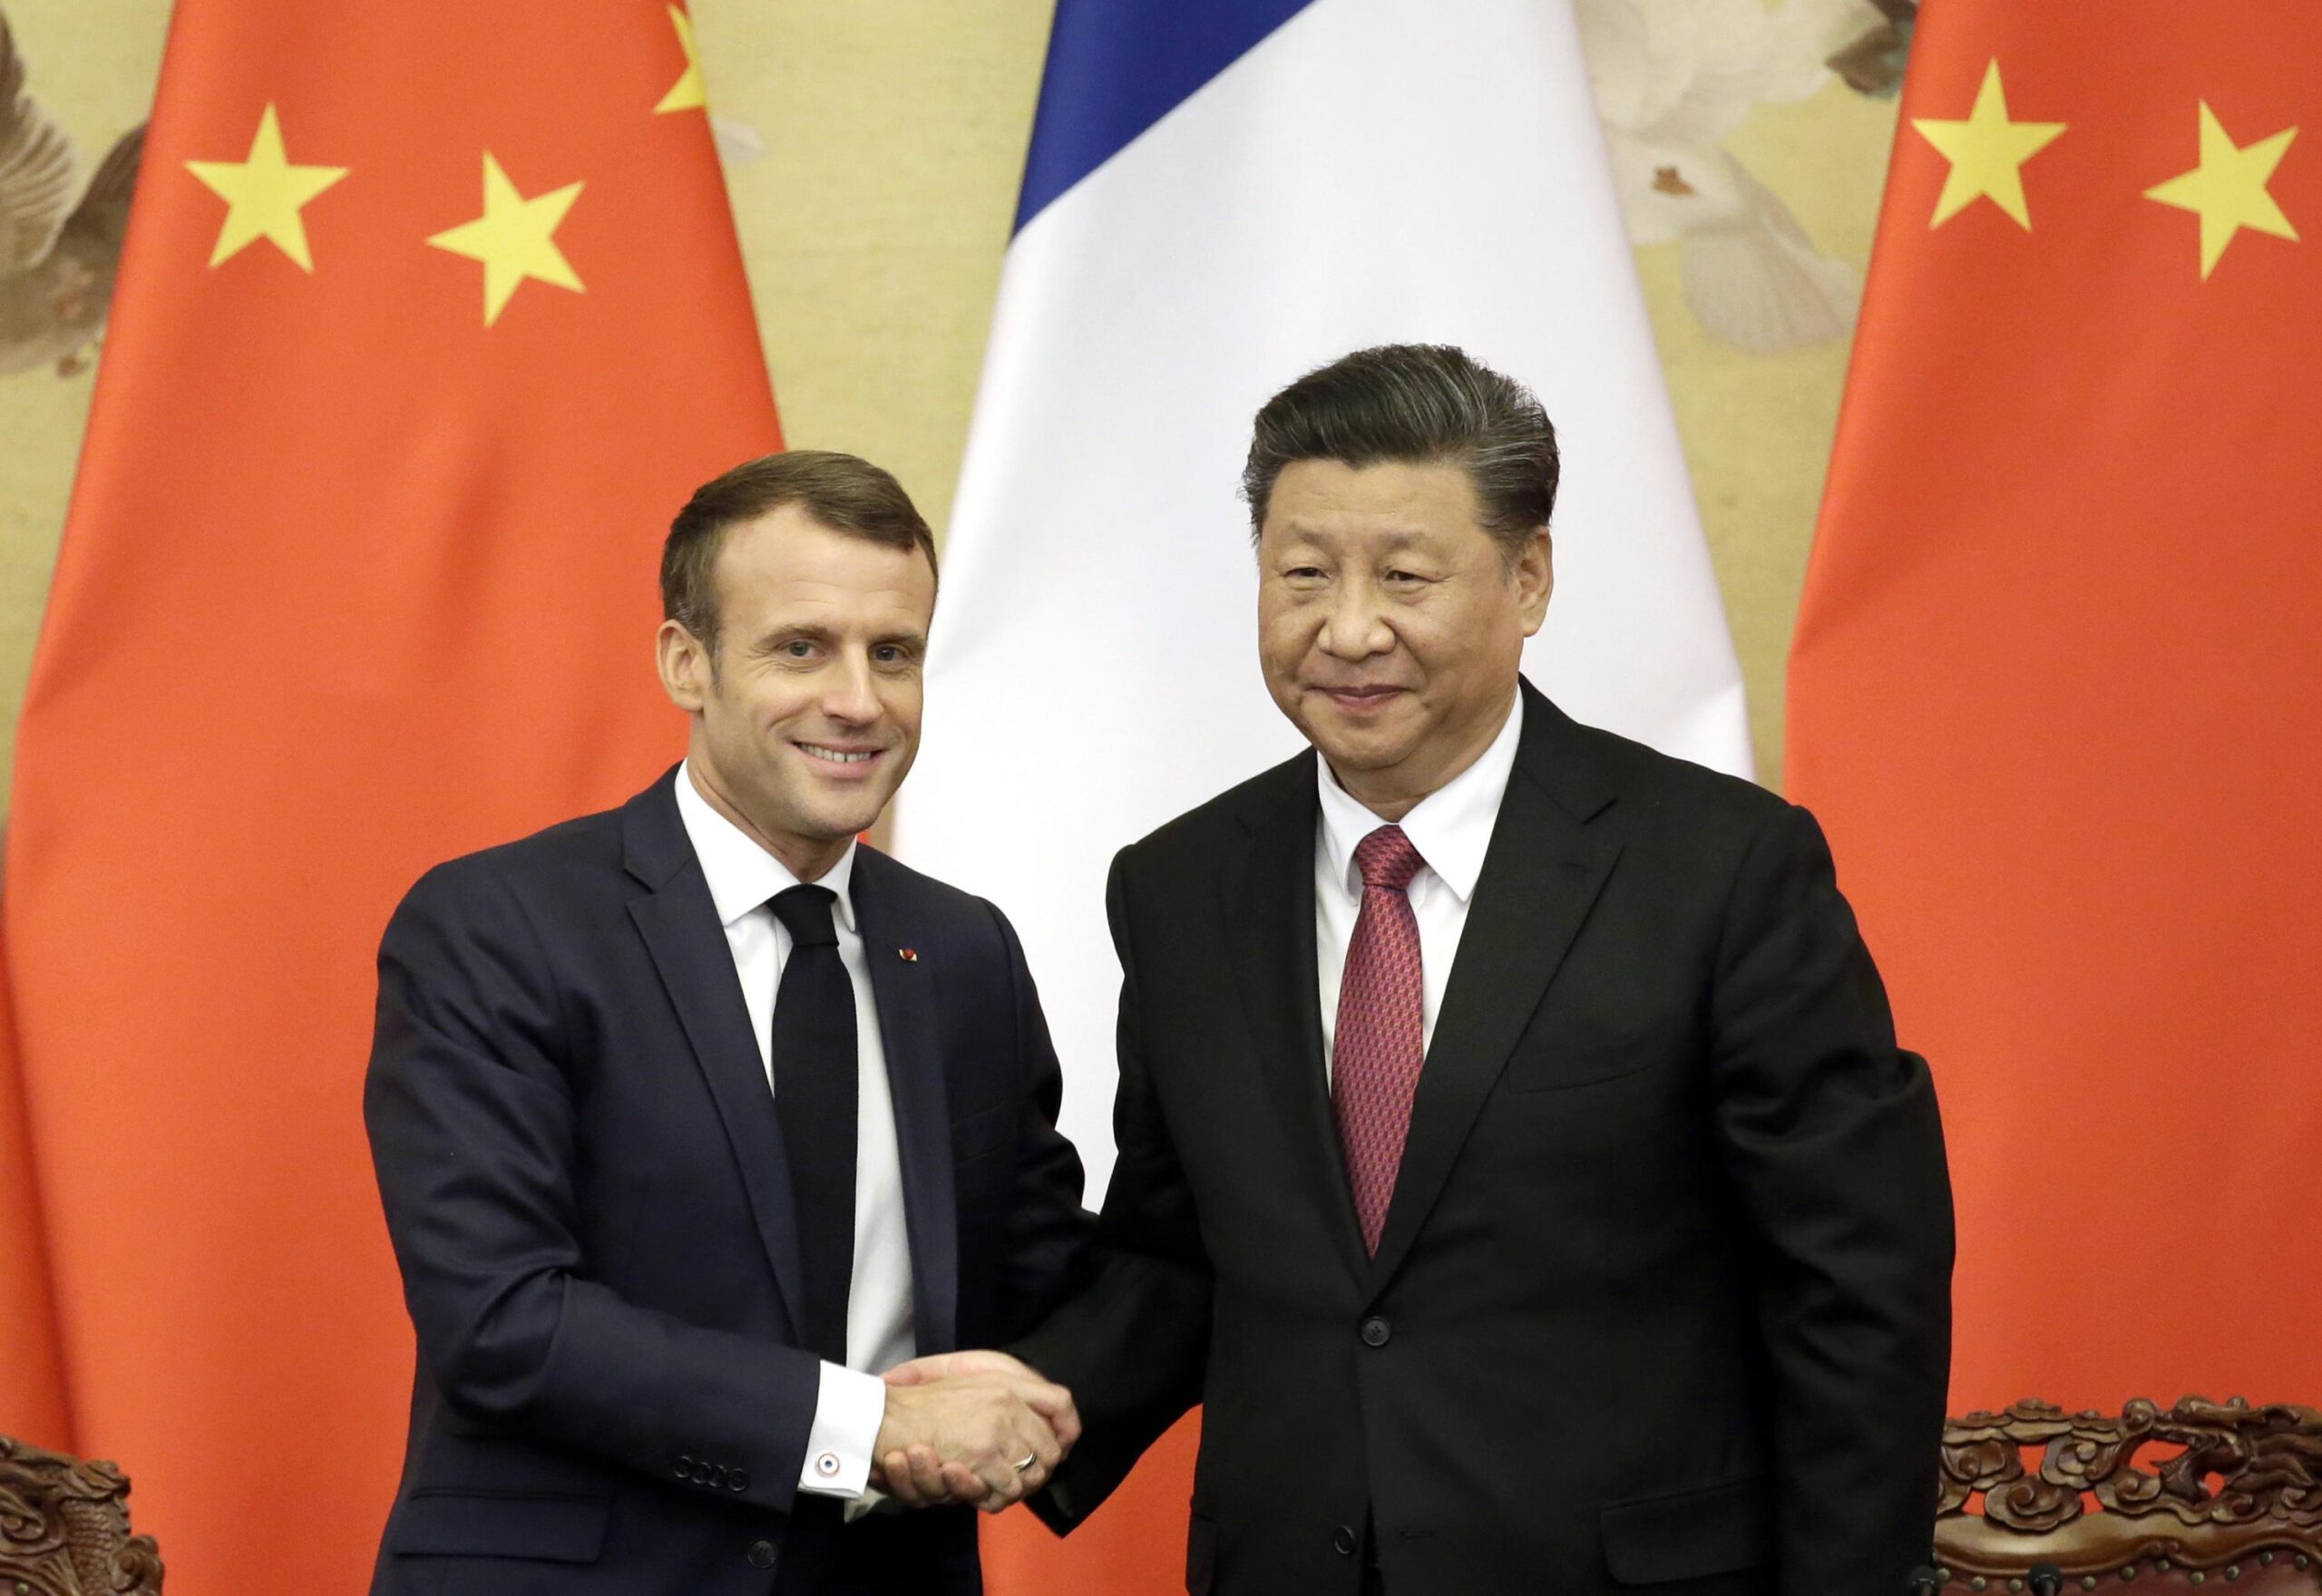 Xi Jinping a Macron: "Viviamo profondi cambiamenti ma superiamo le differenze"